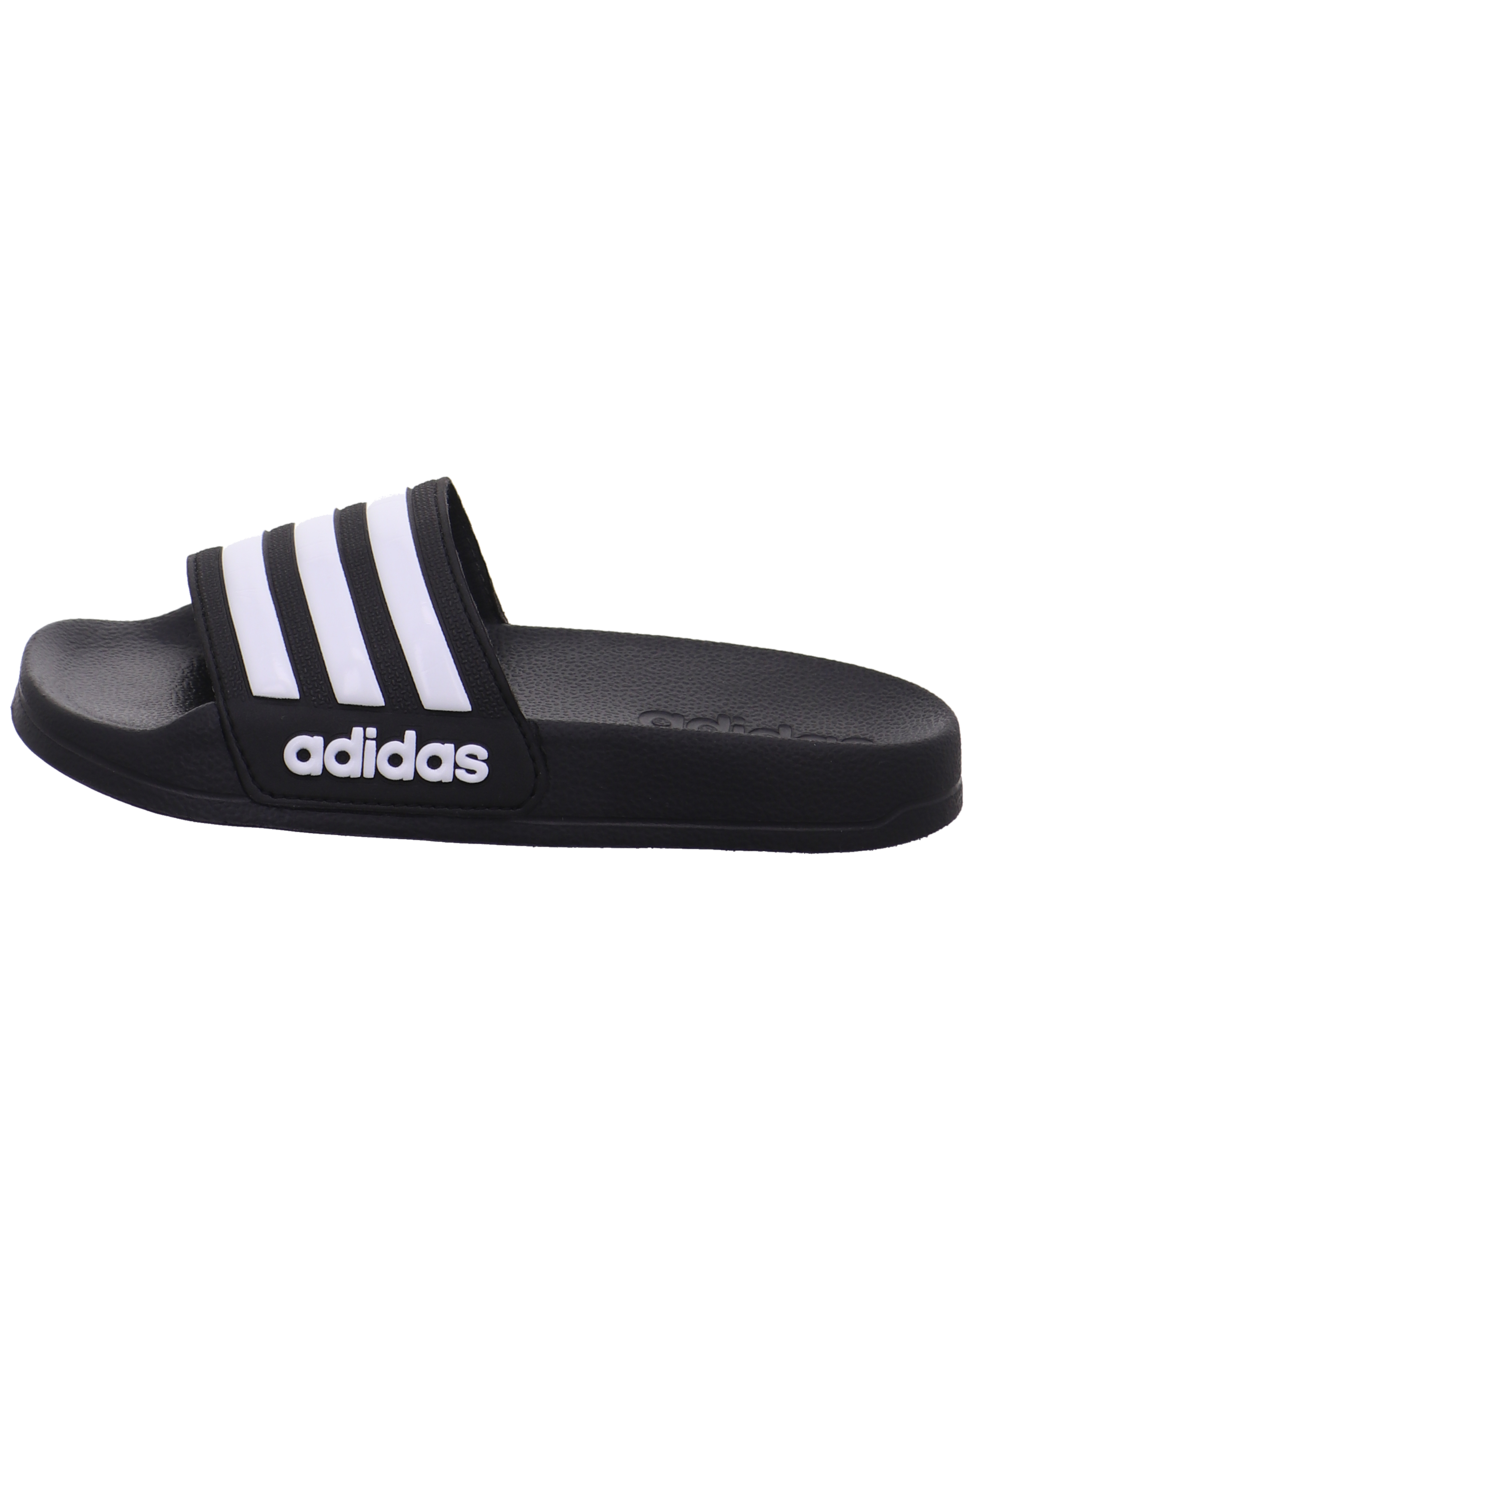 Adidas Schuhe  schwarz kombi Bild1